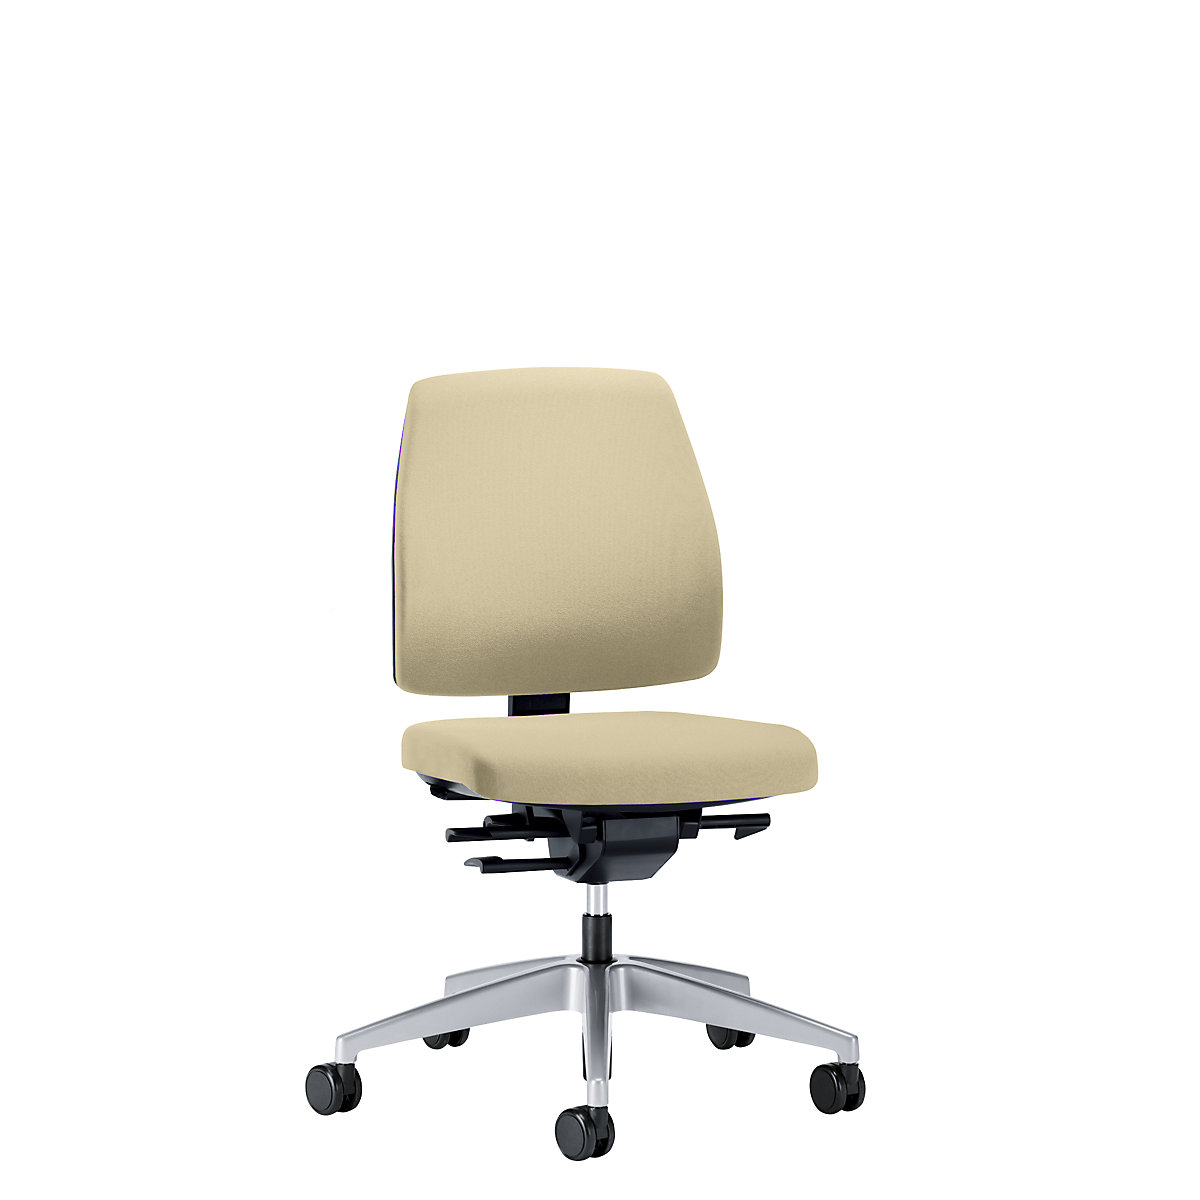 Bürodrehstuhl GOAL, Rückenlehnenhöhe 430 mm interstuhl, Gestell brillantsilber, mit harten Rollen, beige, Sitztiefe 410 mm